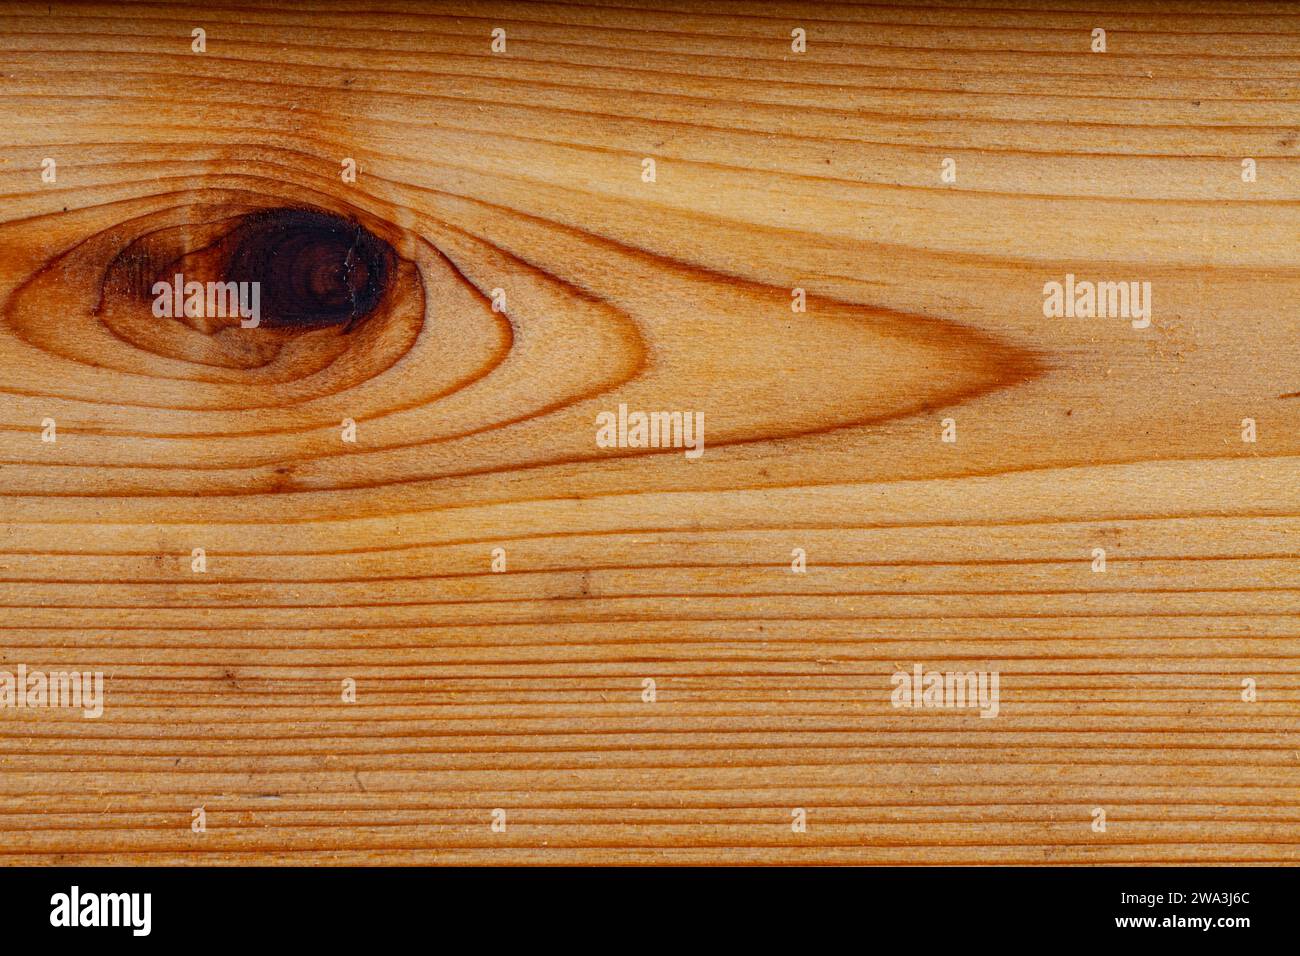 Immagine astratta di una tavola di cedro rosso occidentale lavorata a macchina Foto Stock